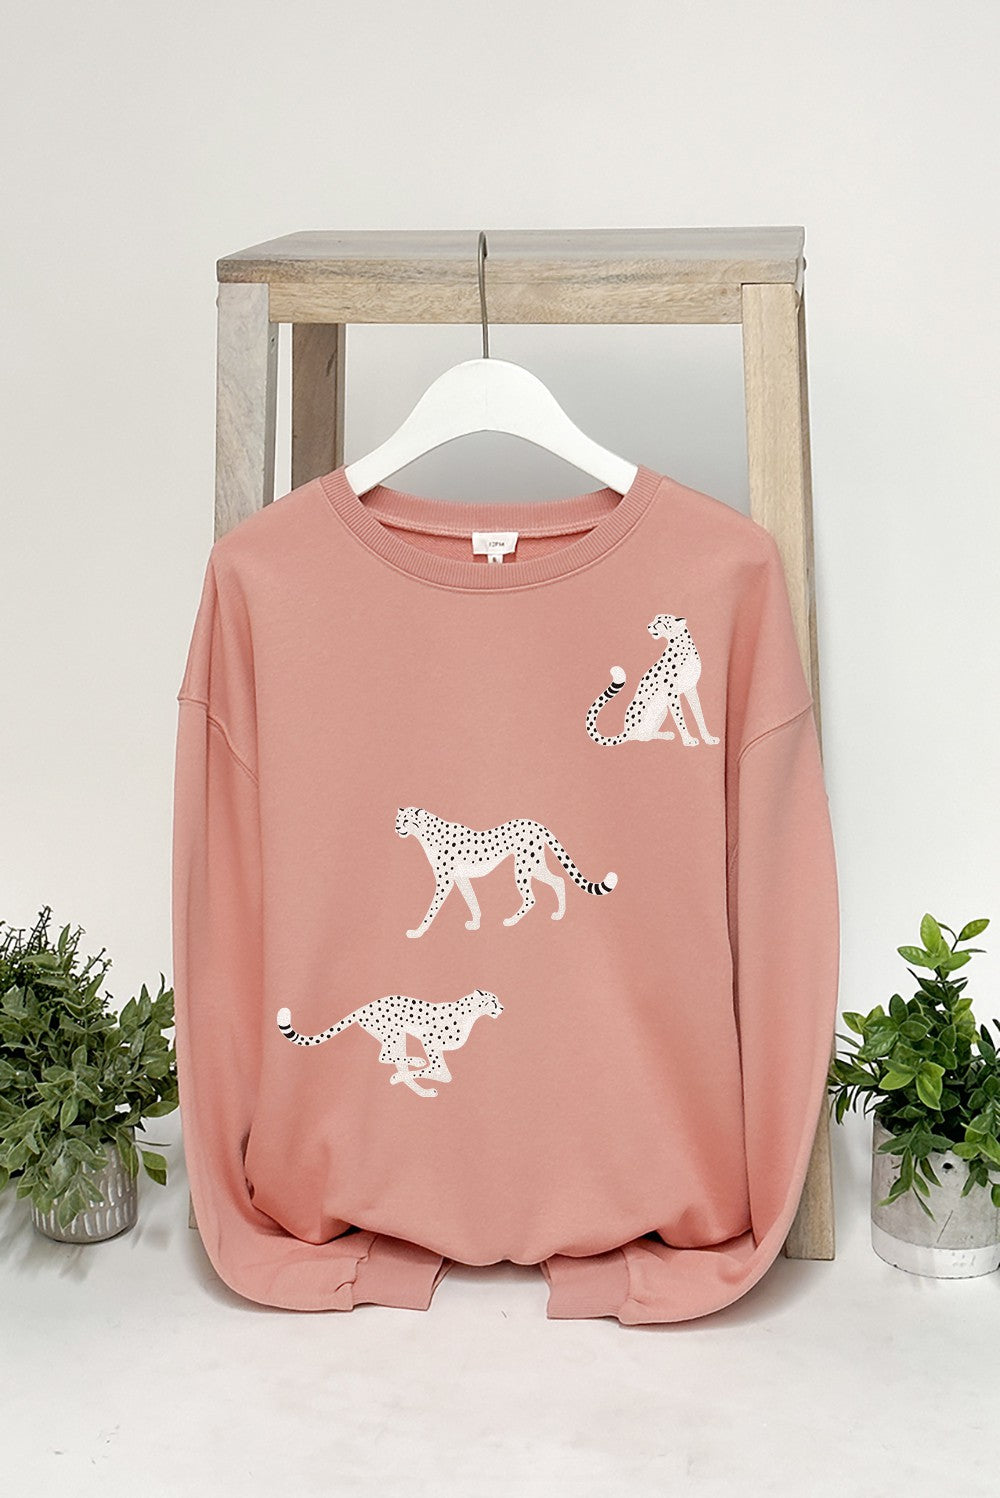 
                  
                    White Cheetahs Sweatshirt Pullover Sweater
                  
                